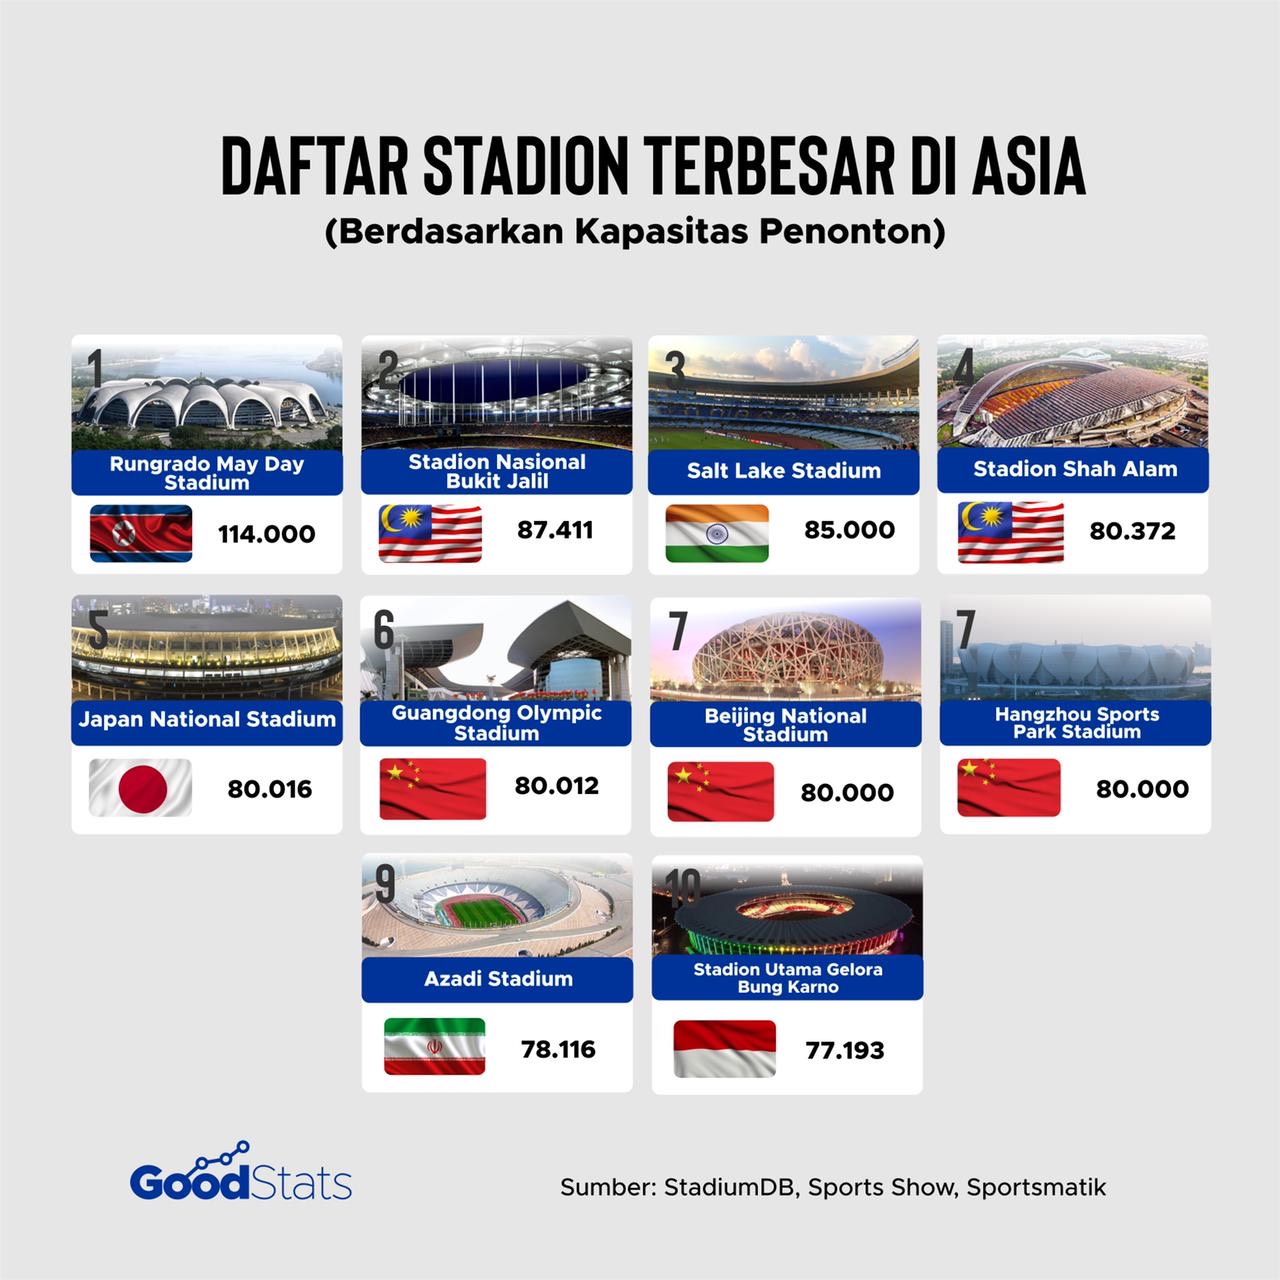 Daftar 10 stadion sepak bola terbesar di Asia berdasarkan kapasitas penonton. Stadion-stadion tersebut merupakan stadion multifungsi dengan salah satu fungsi utama untuk pertandingan sepak bola. | GoodStats